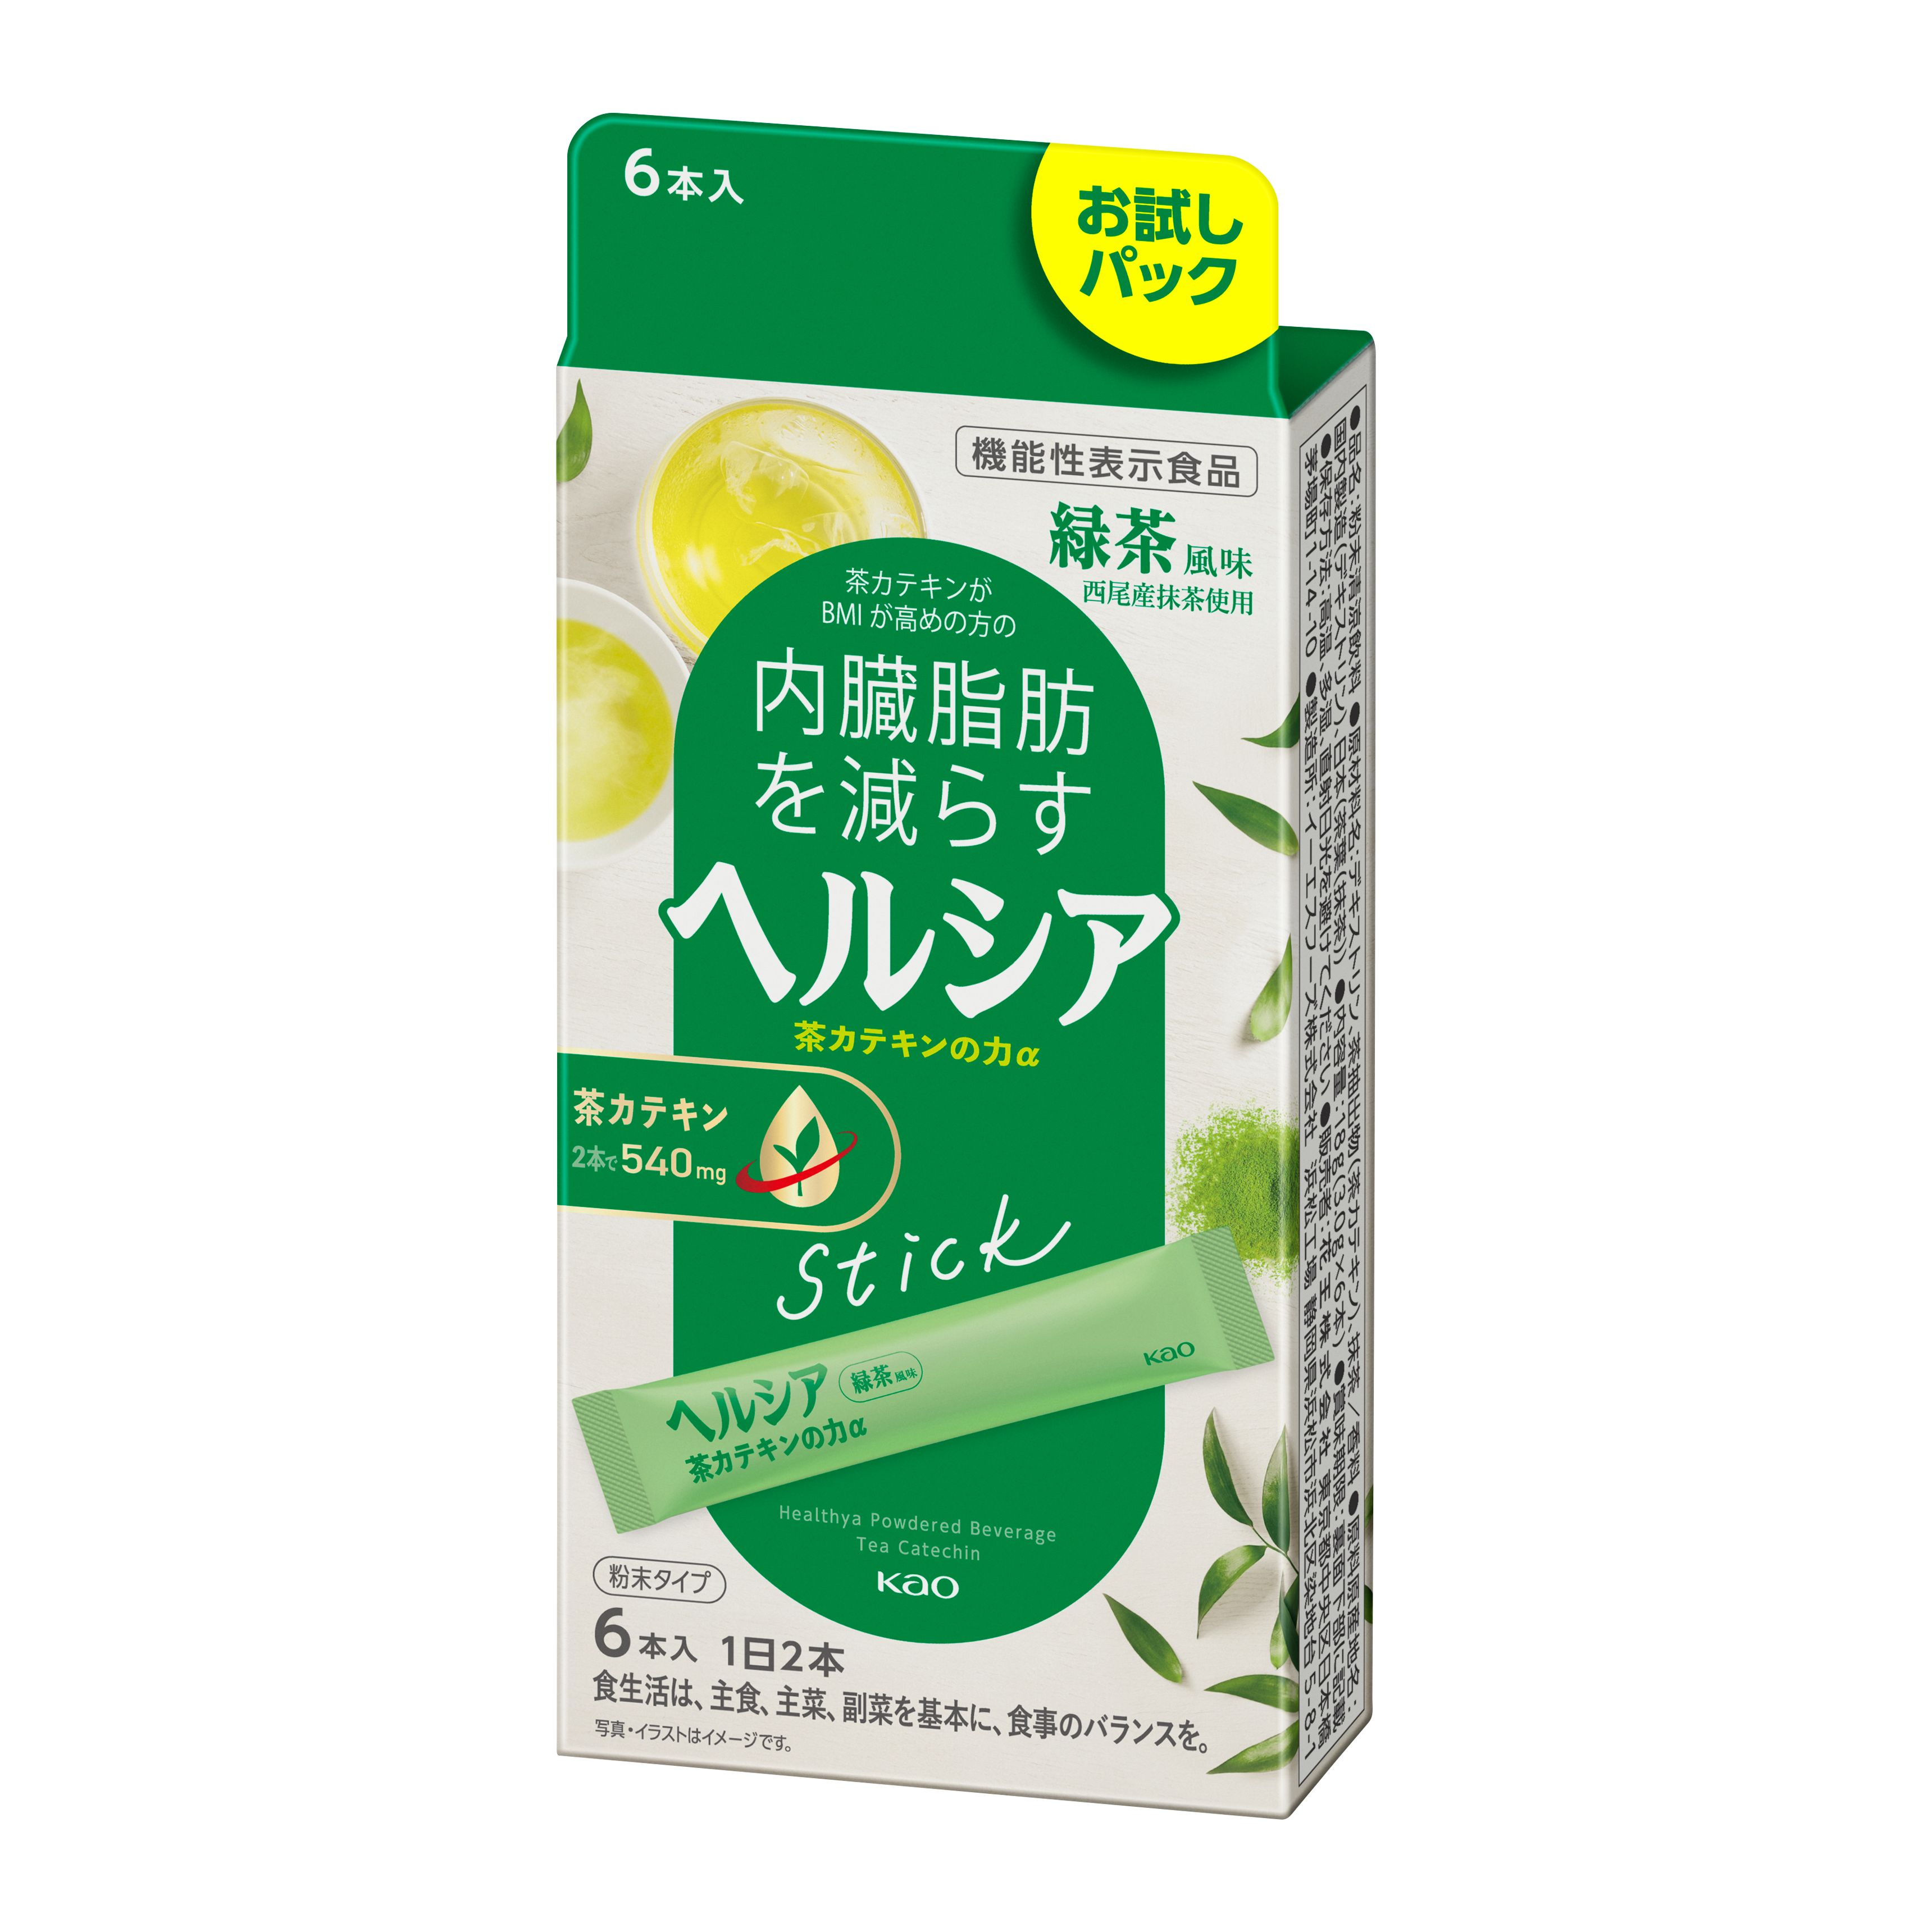 ヘルシア茶カテキンの力 緑茶風味 賞味期限23年5月  4箱まとめ売り